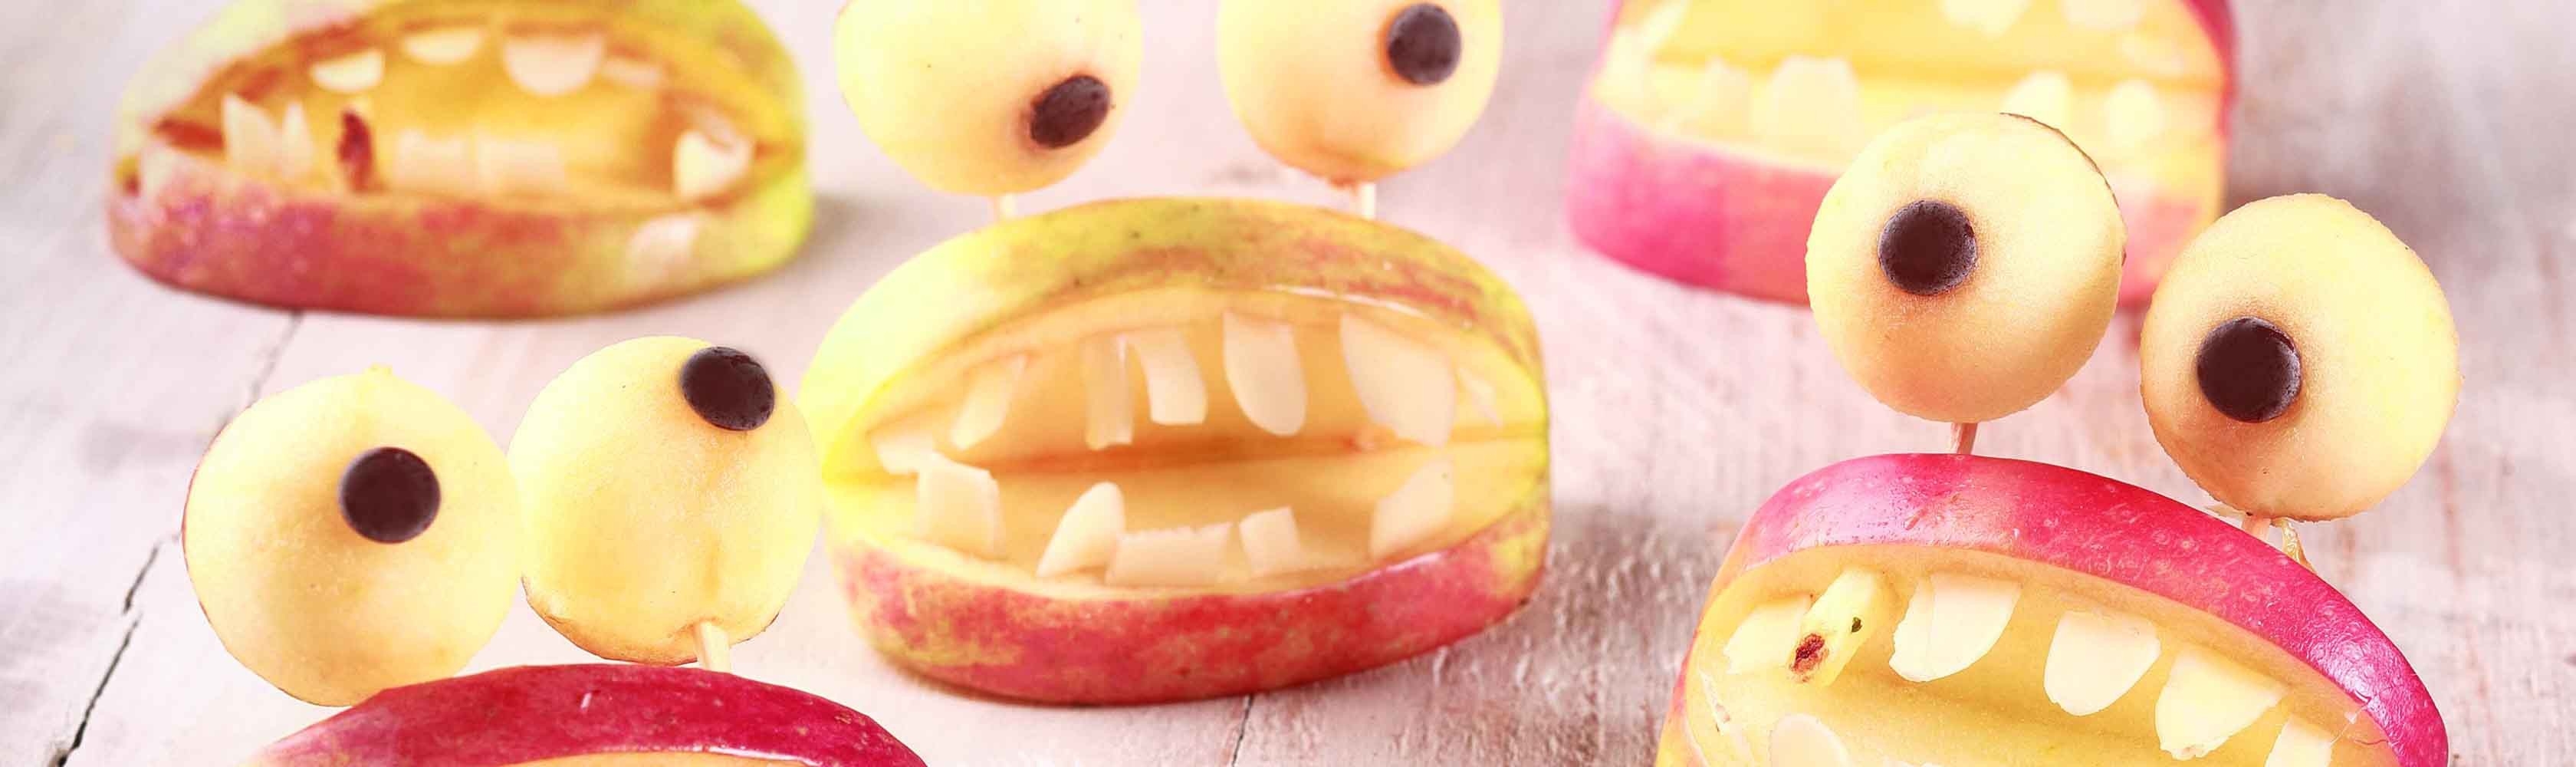 Bouches de monstres avec des pommes